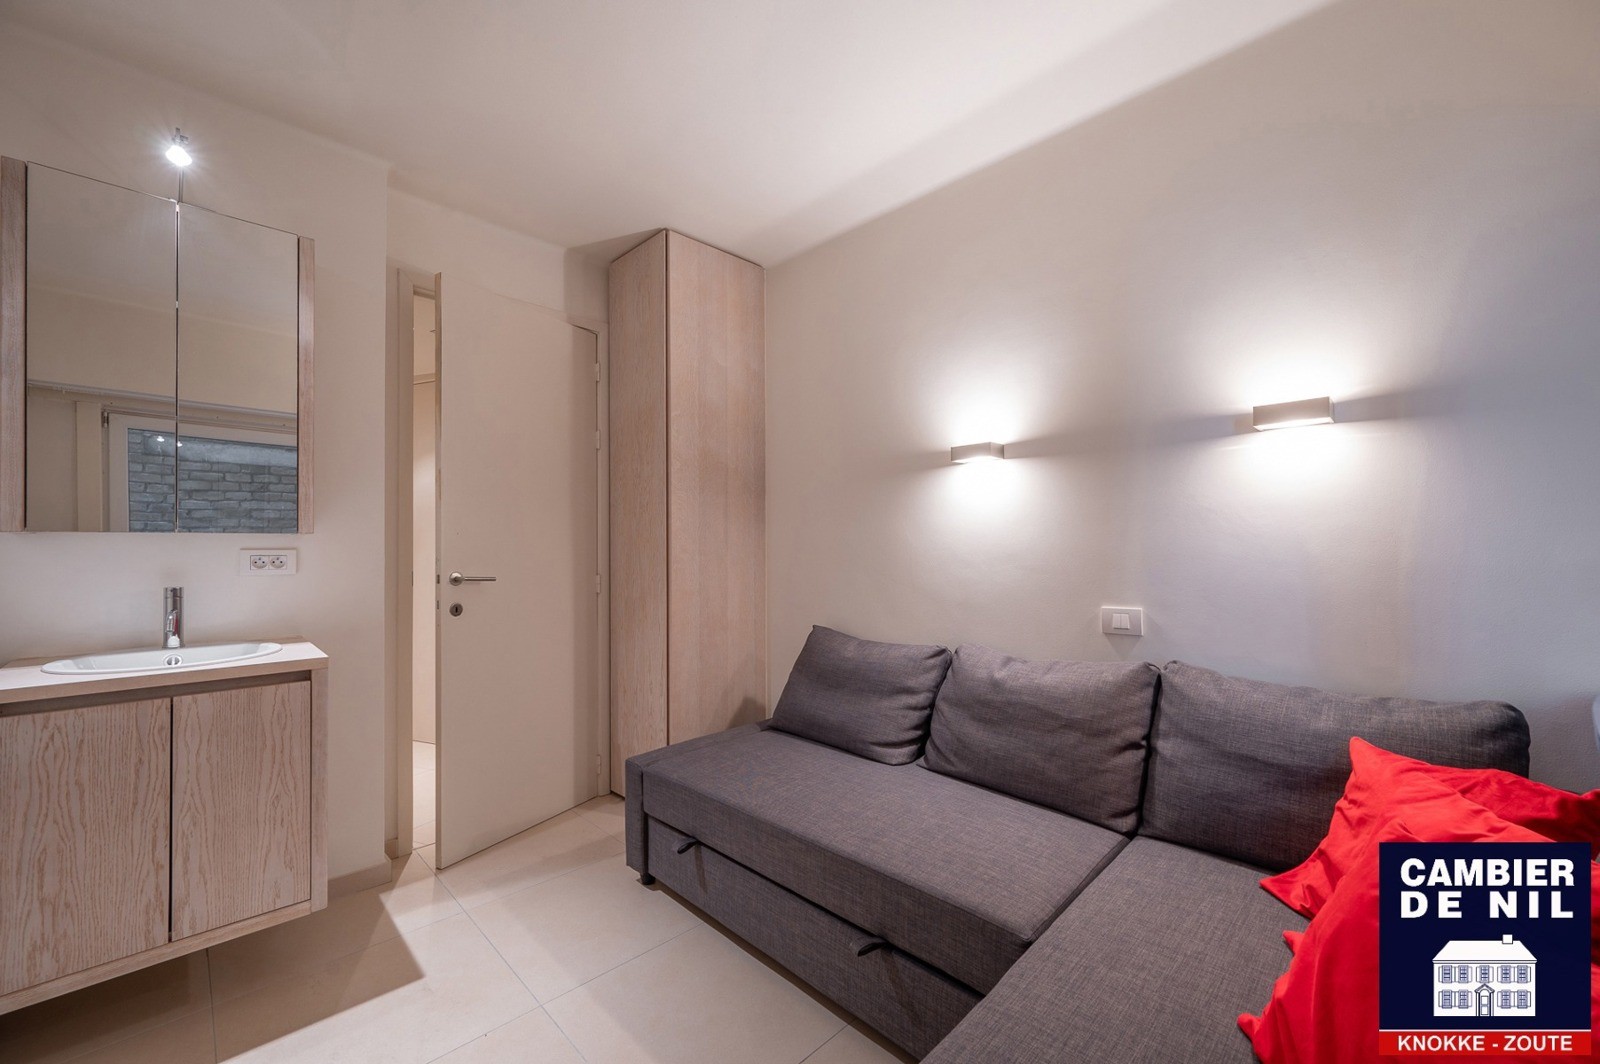 MEUBLÉ : Appartement spacieux avec vue mer et 4 chambres à coucher à Duinbergen ! 12